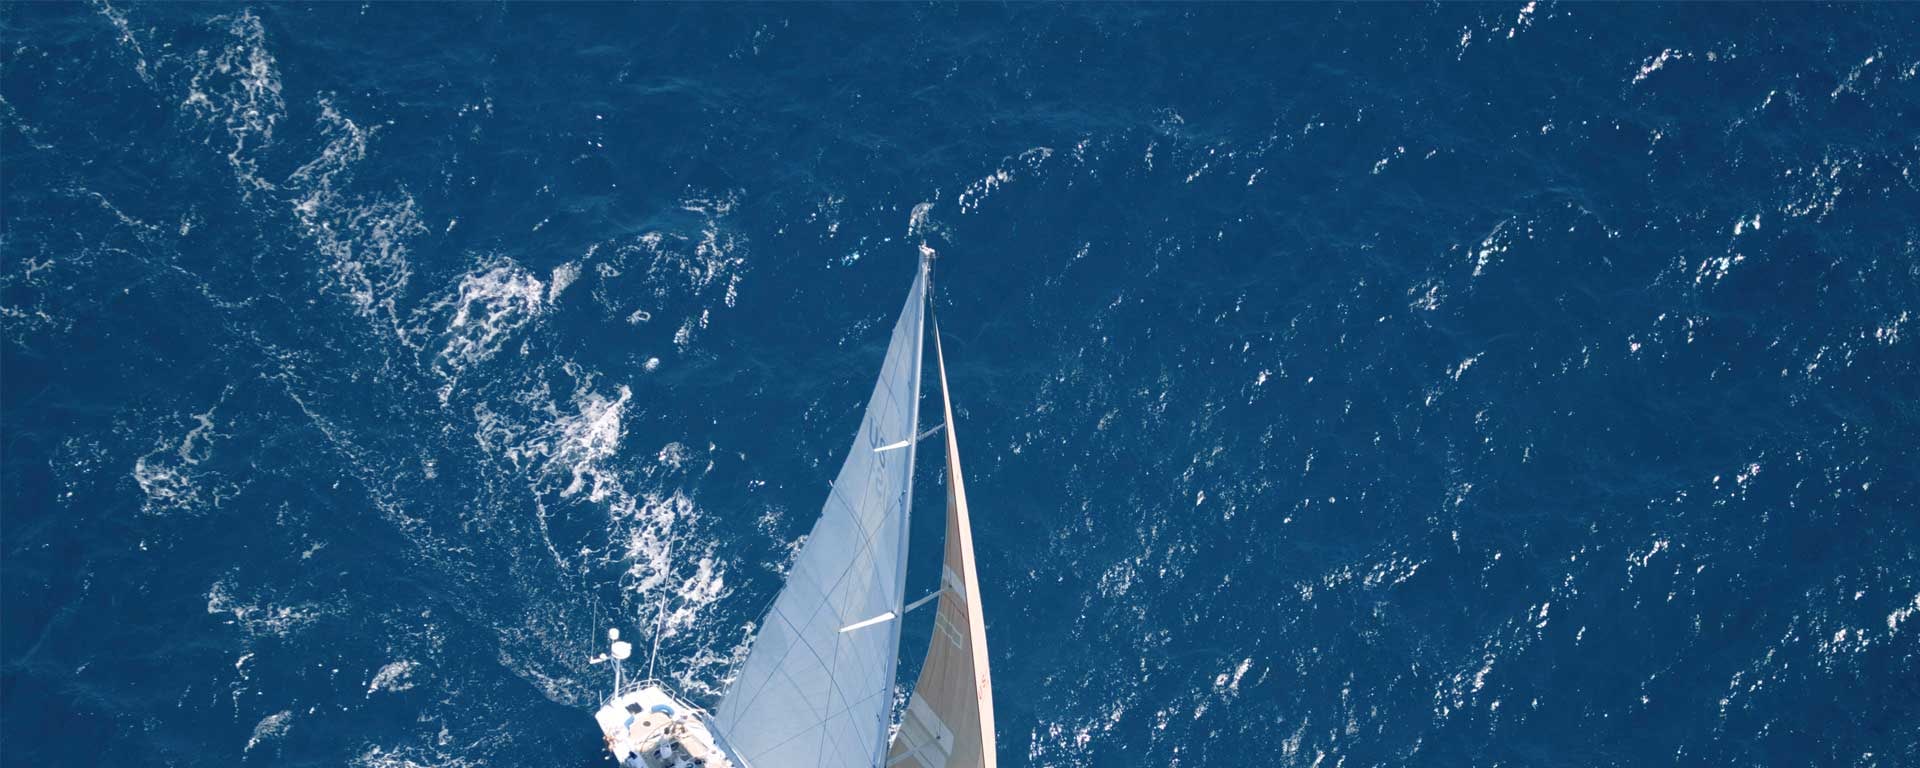 Ein Segelschiff fährt auf dem offenen Meer bei starkem Wind